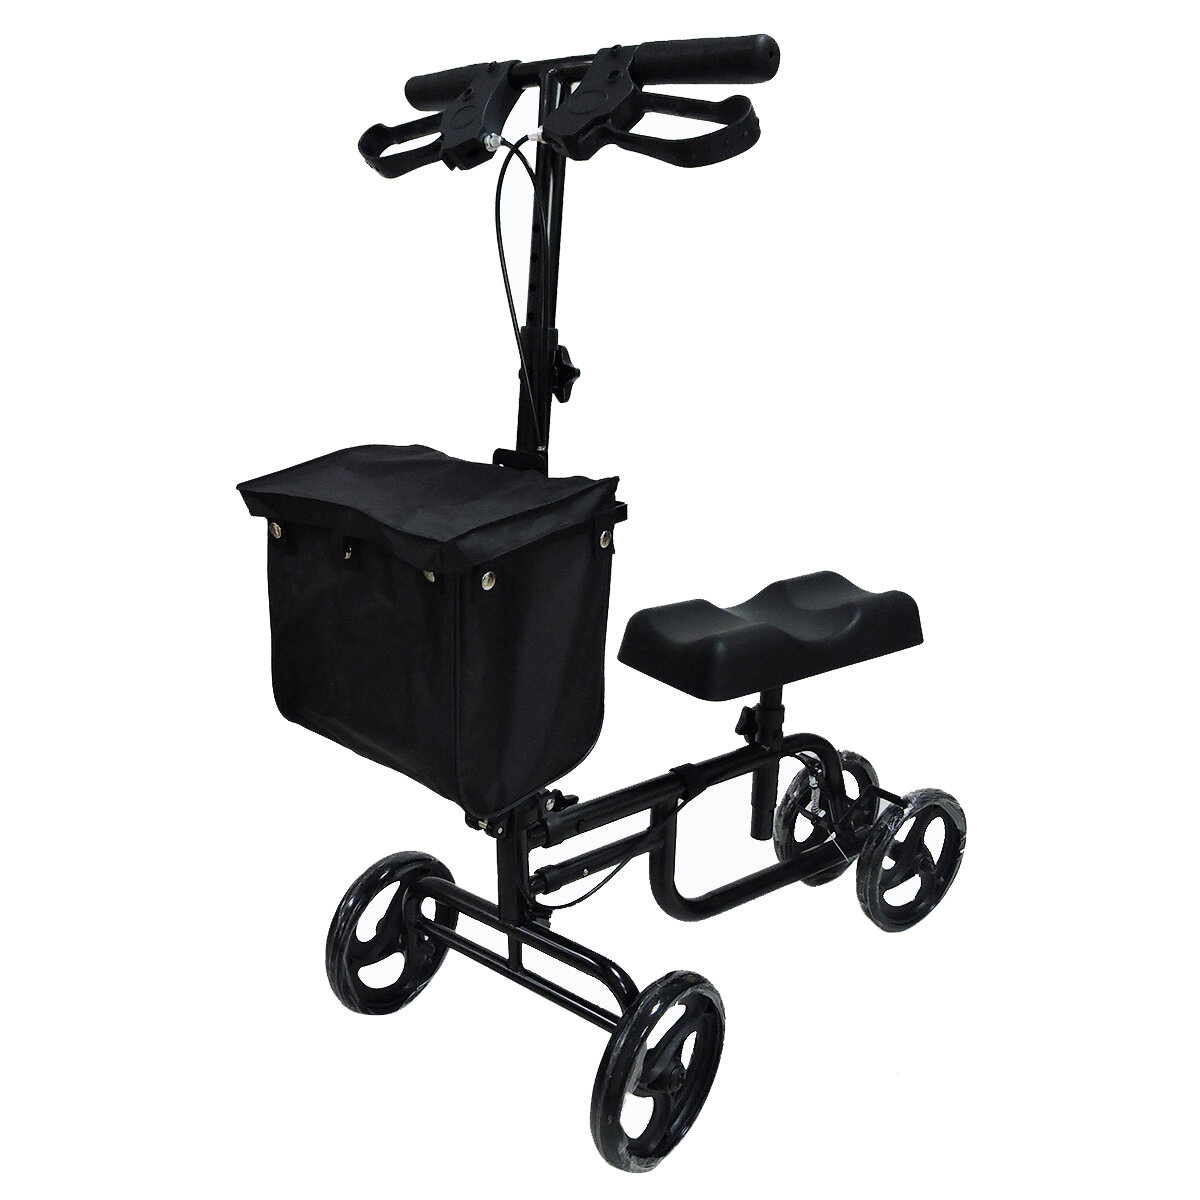 Image of Mobility Knee Walker Scooter Roller Crutch Leg Steerable Foldable Design Adjustable Height Adjustable Locking Hand Brake